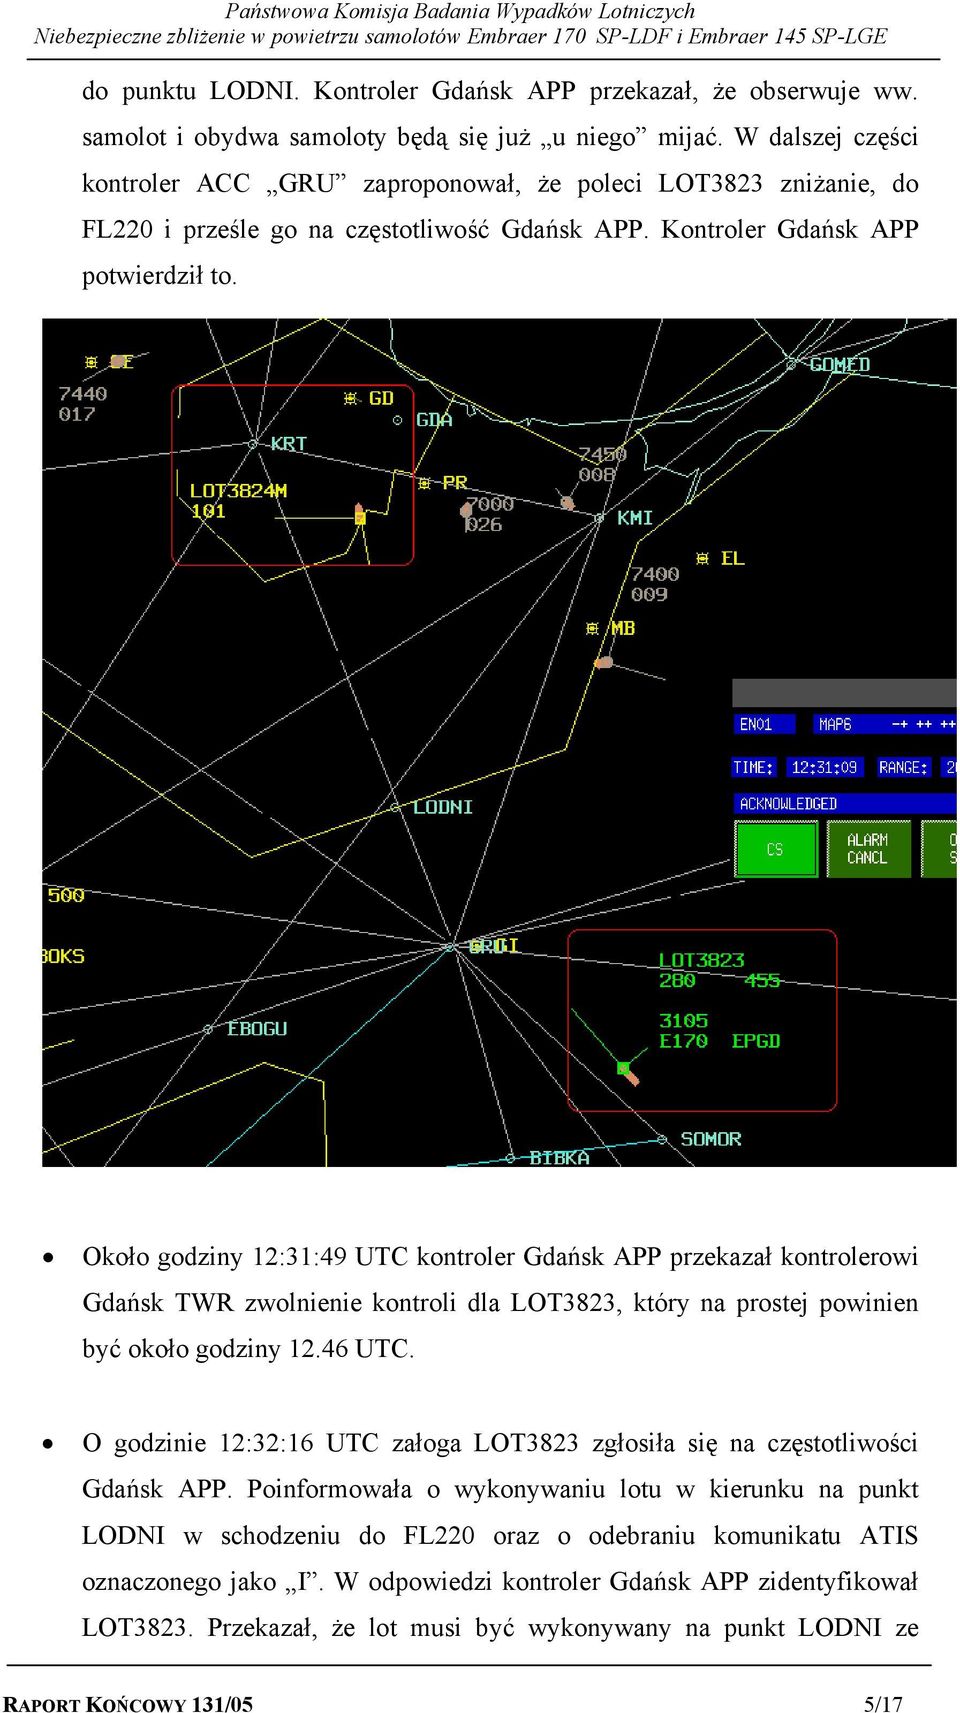 Około godziny 12:31:49 UTC kontroler Gdańsk APP przekazał kontrolerowi Gdańsk TWR zwolnienie kontroli dla LOT3823, który na prostej powinien być około godziny 12.46 UTC.